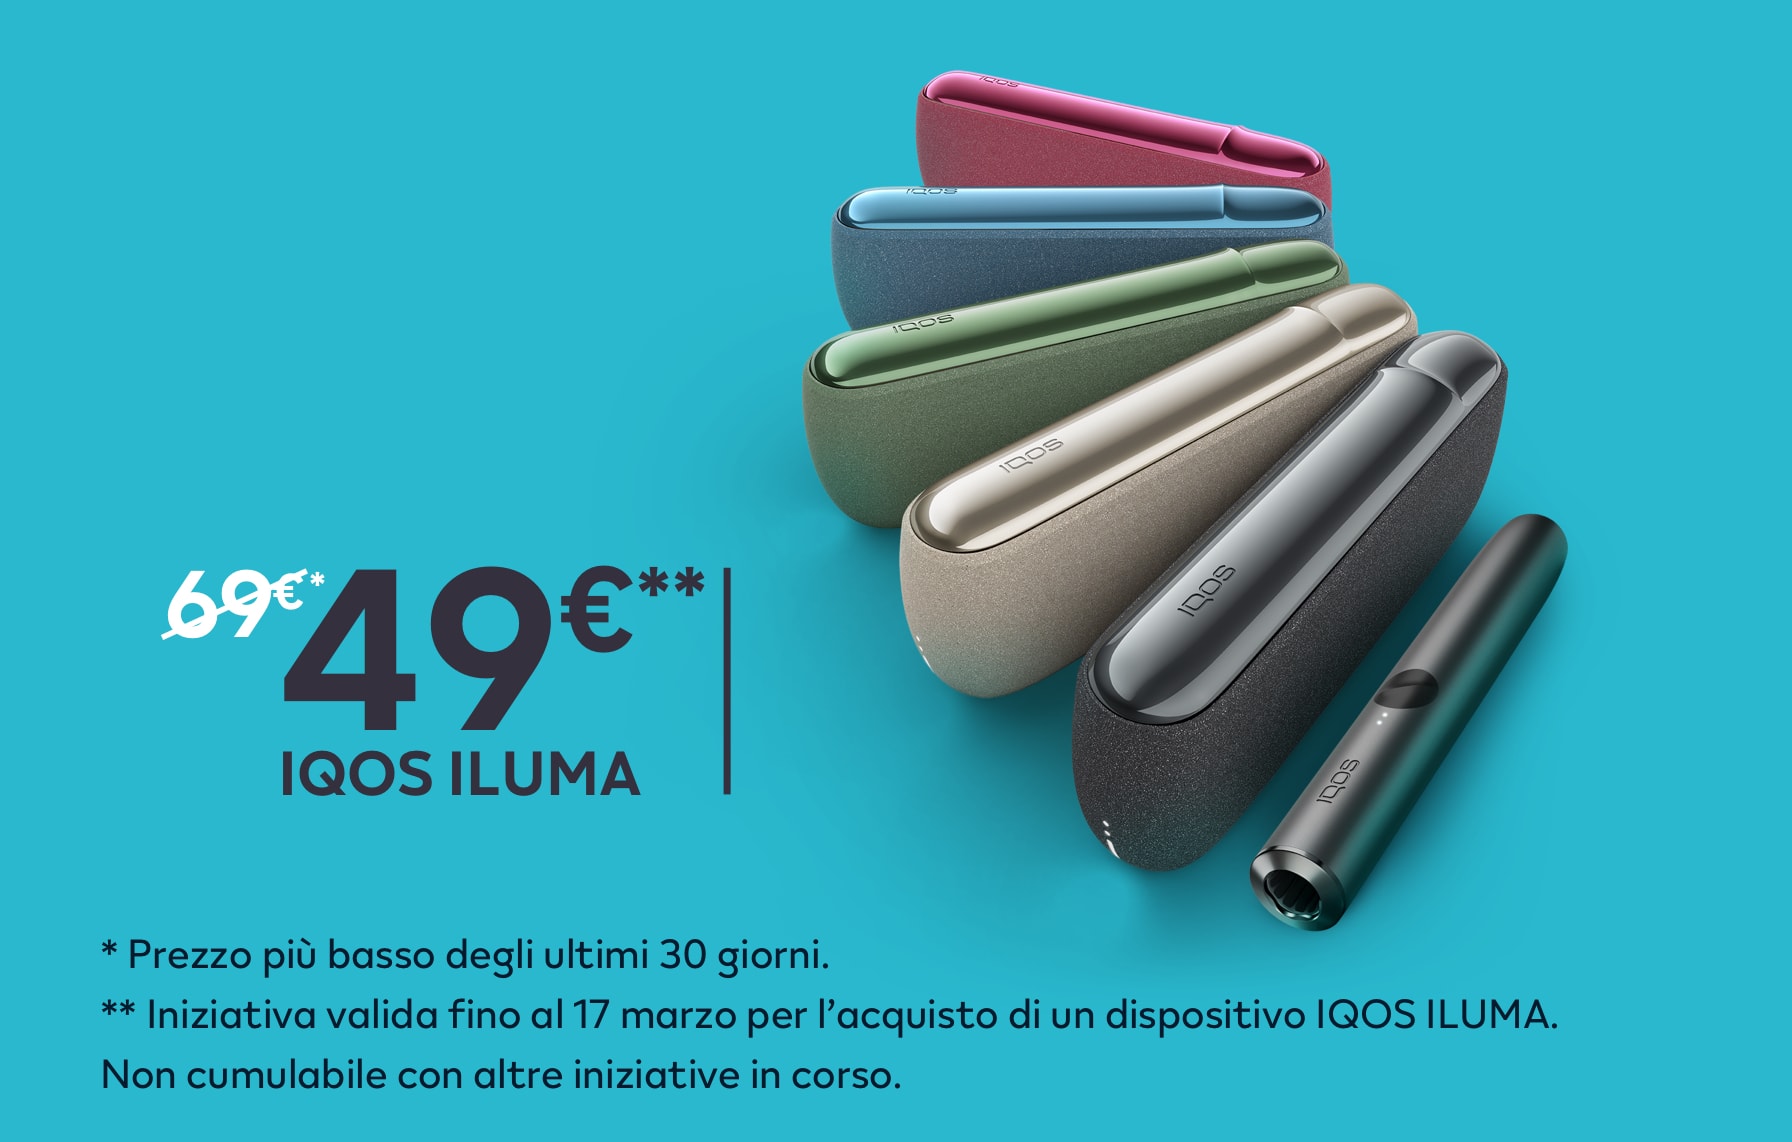 Cover IQOS trasparente - Personalizzata con nome! Per IQOS 3 e ILUMA – Fado  Store